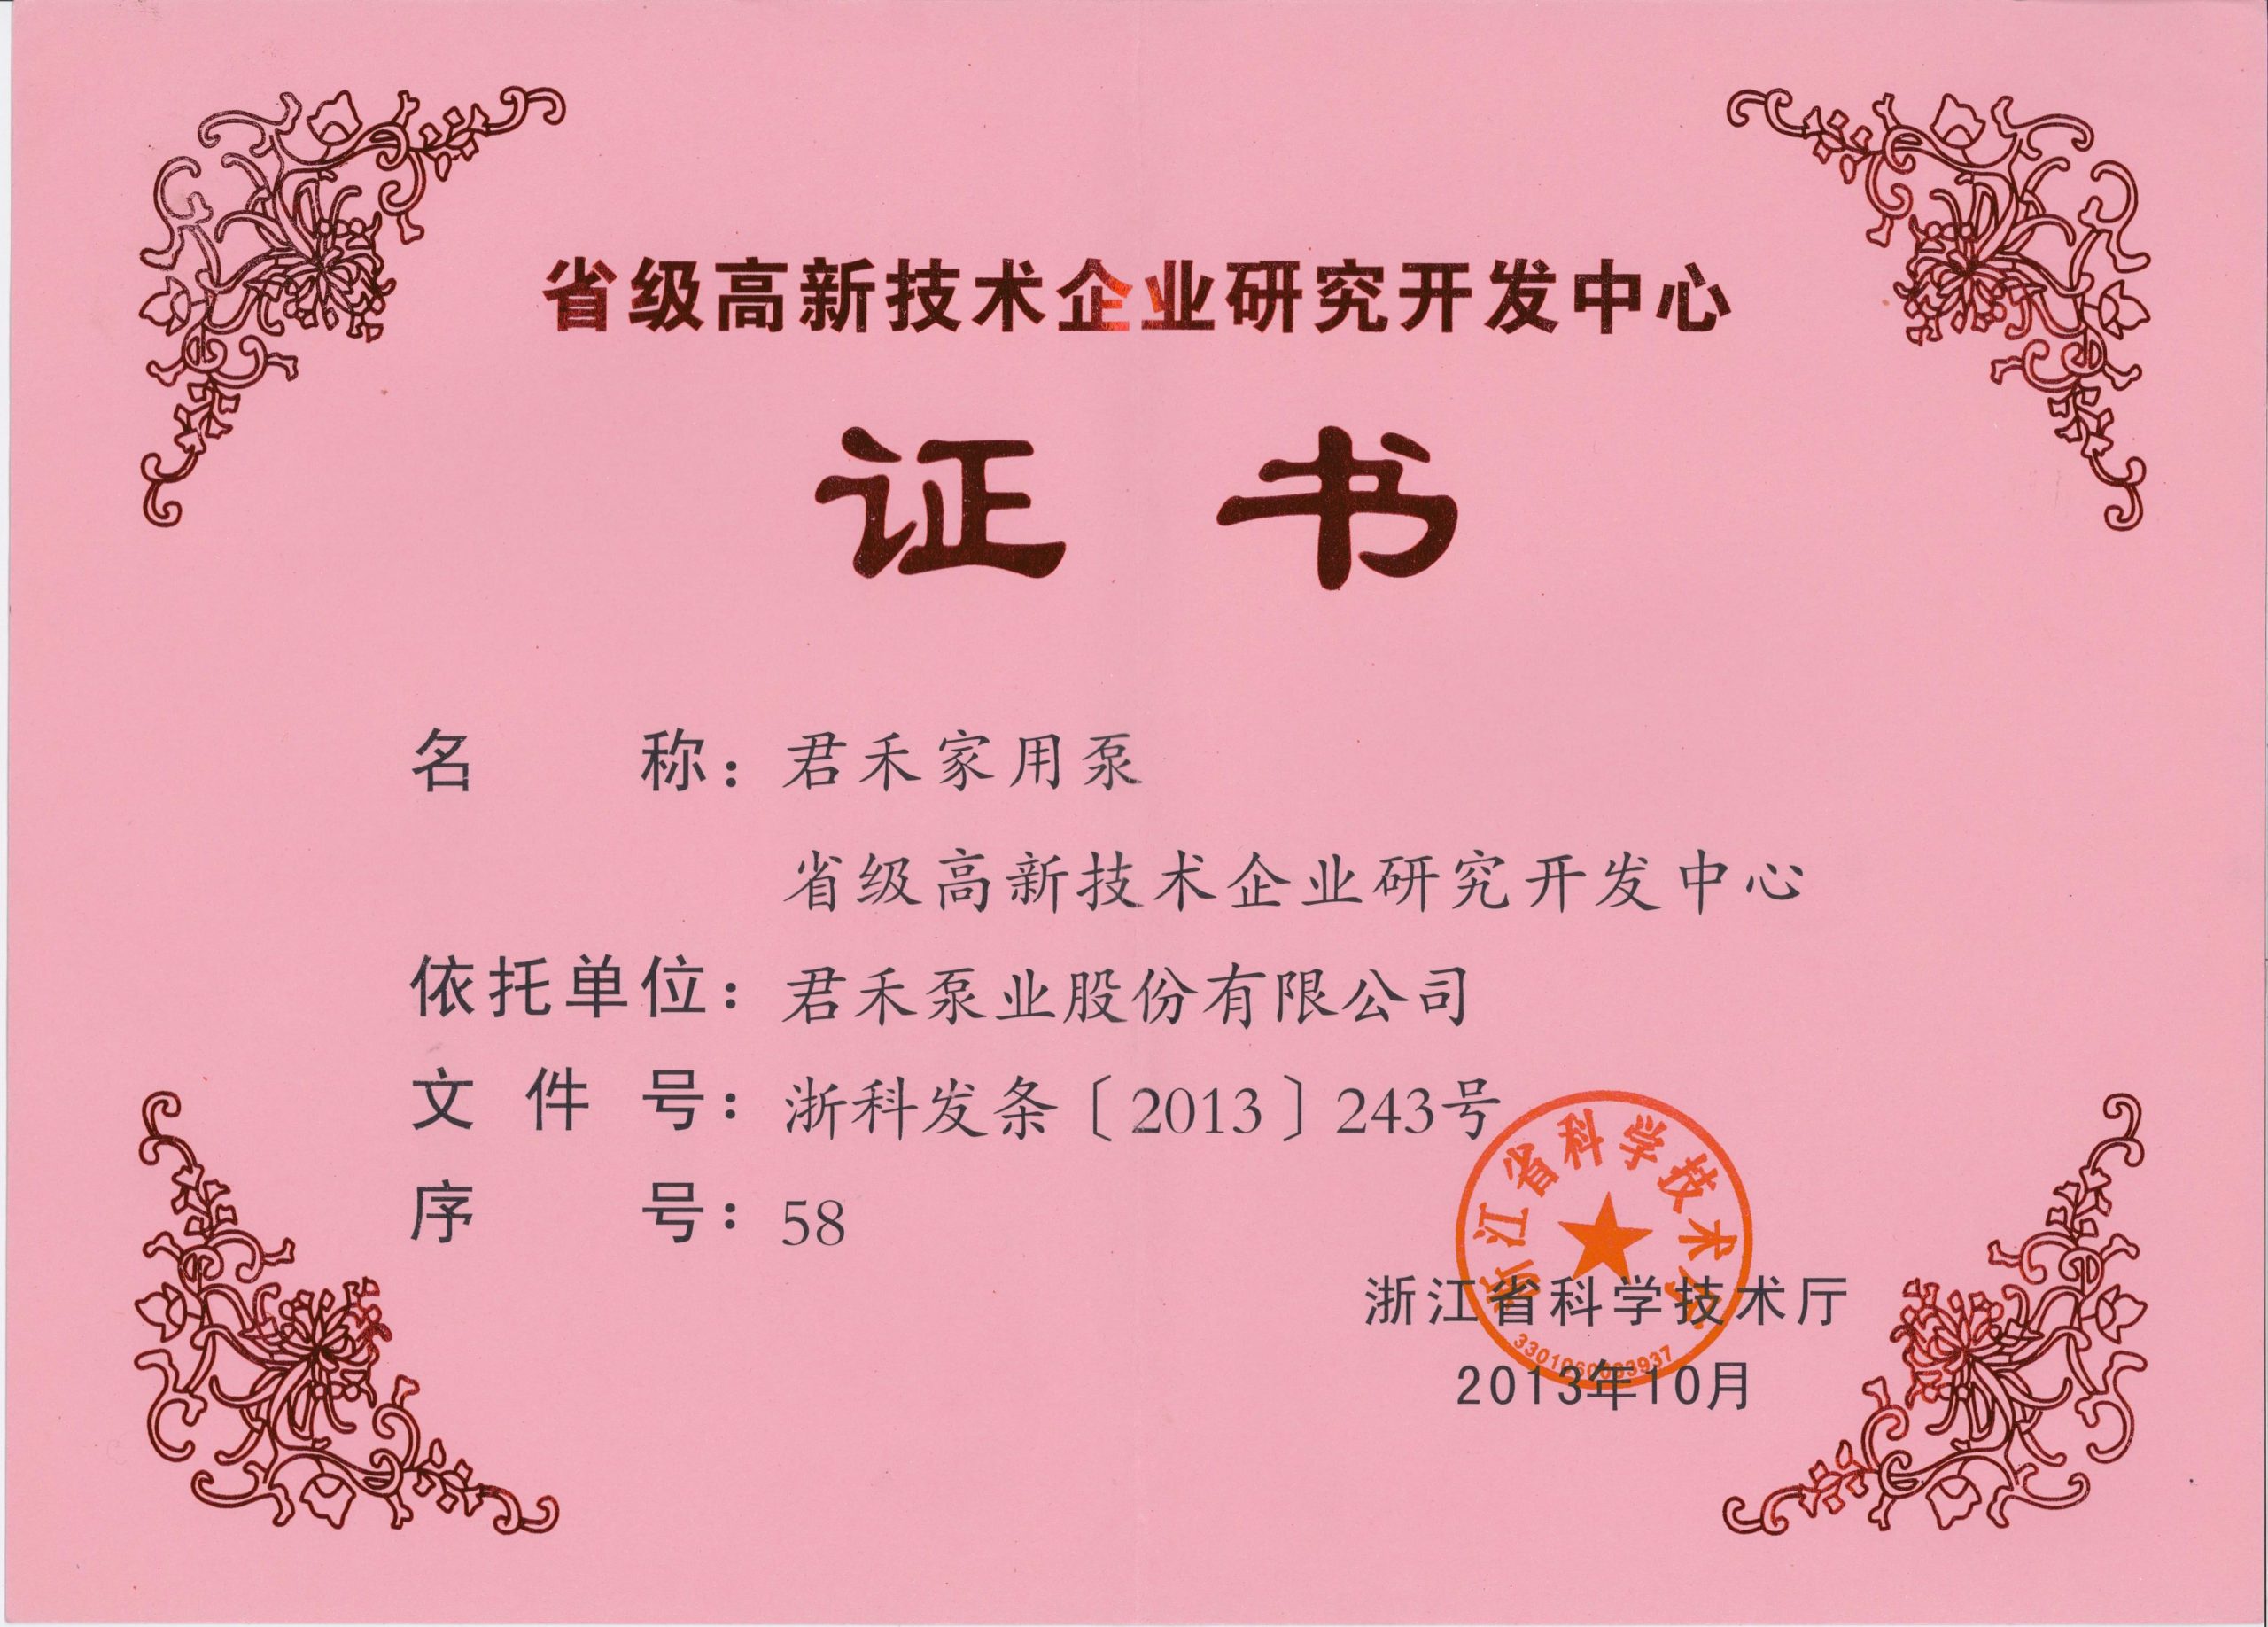 2013.10-君禾家用泵省级高新技术企业研发中心证书